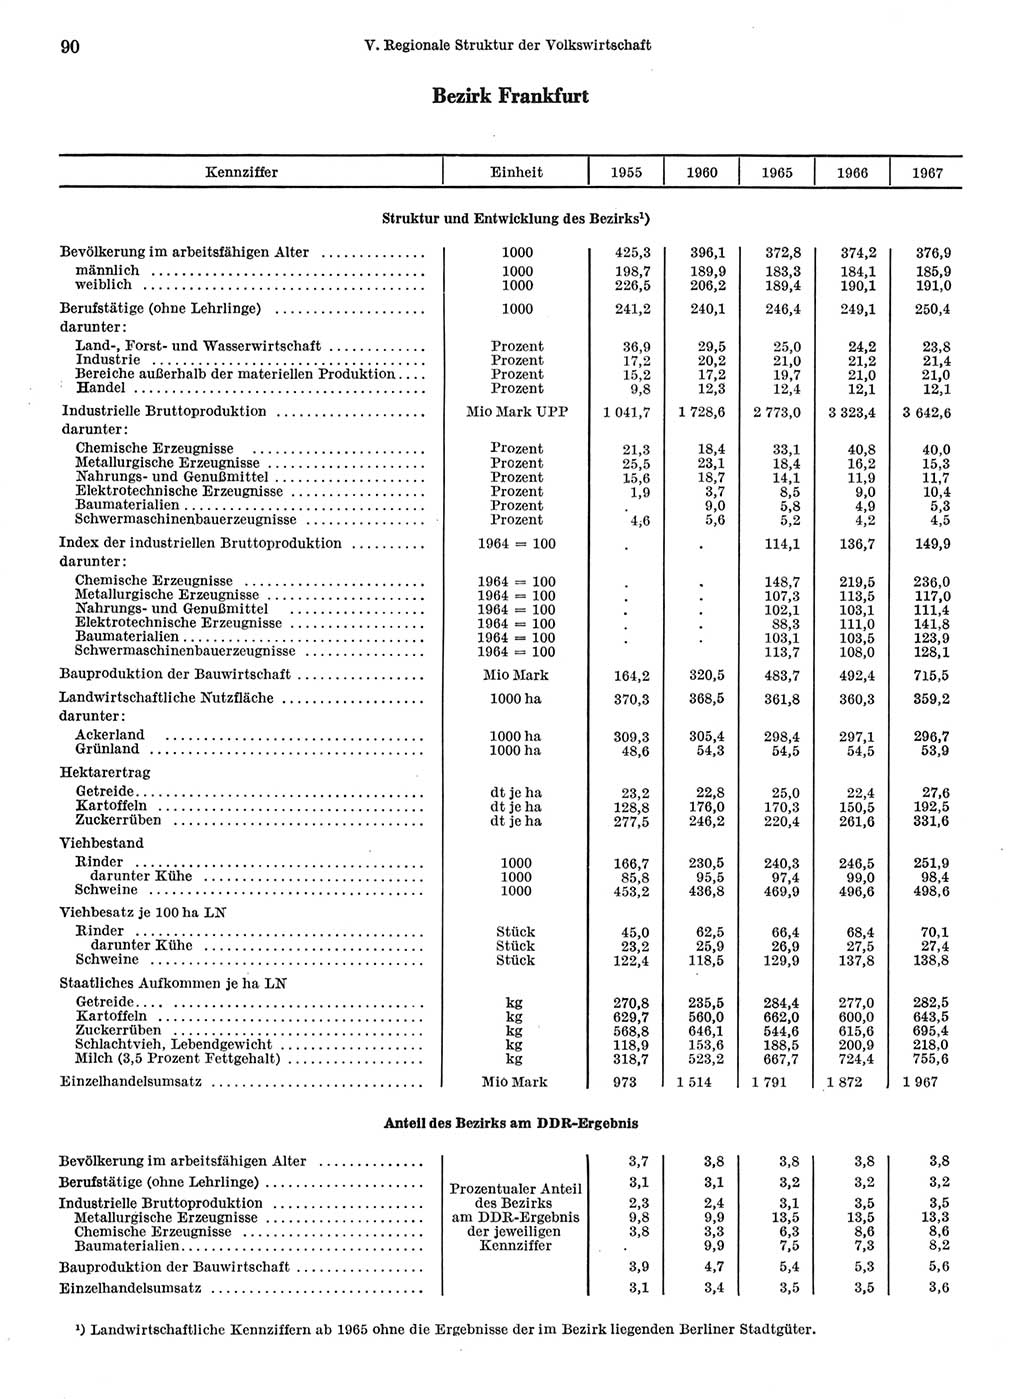 Statistisches Jahrbuch der Deutschen Demokratischen Republik (DDR) 1968, Seite 90 (Stat. Jb. DDR 1968, S. 90)